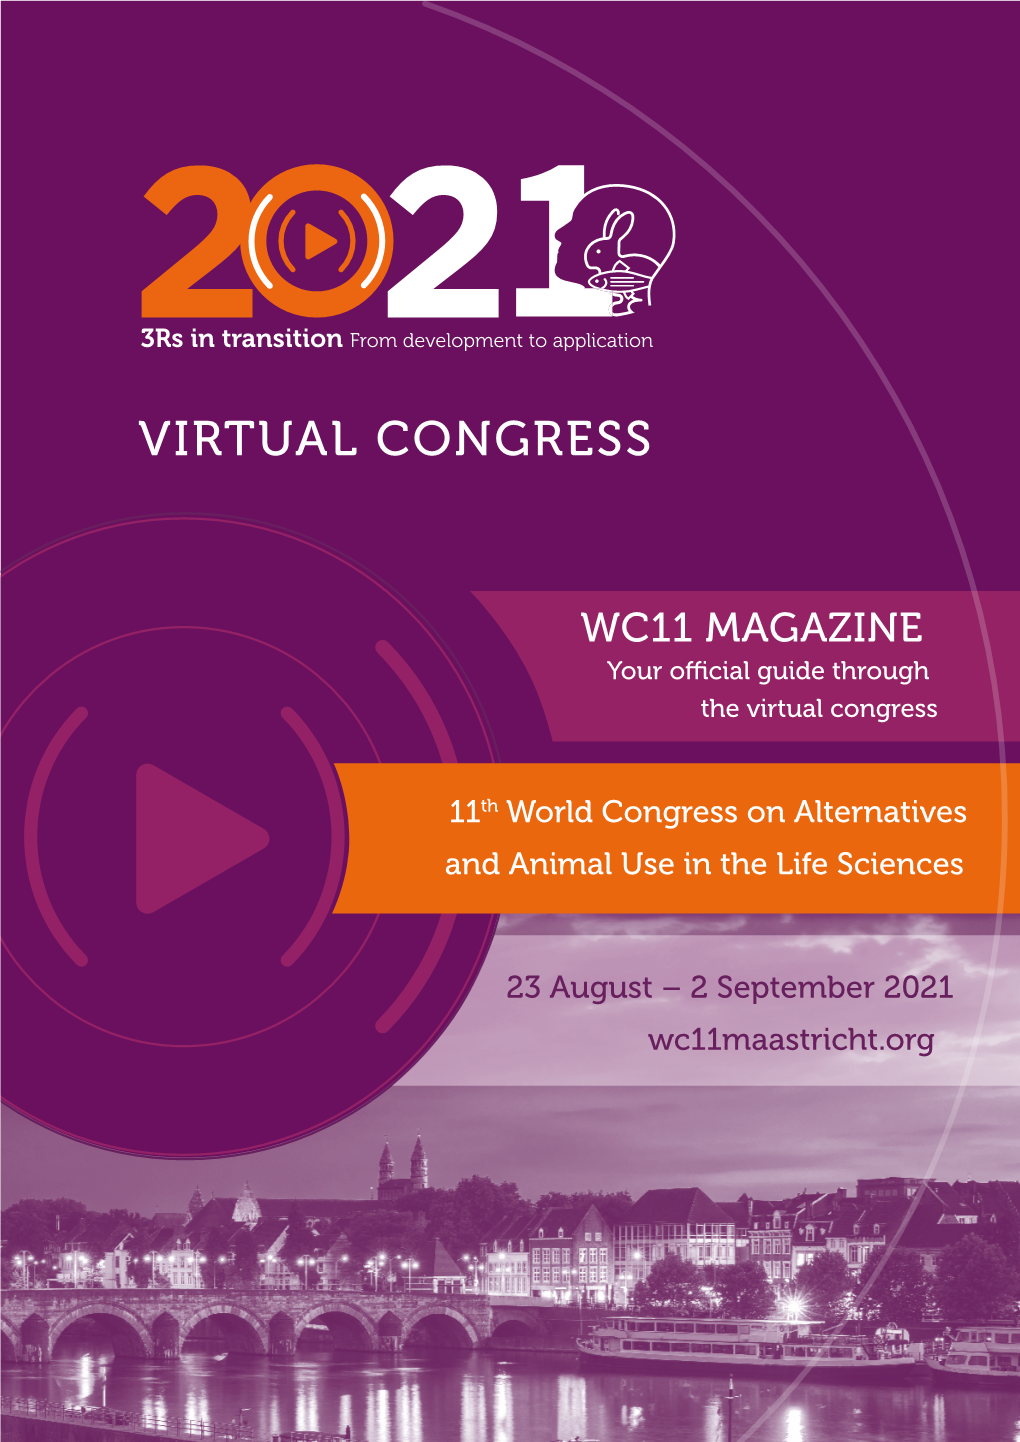 Virtual Congress Virtual Congress